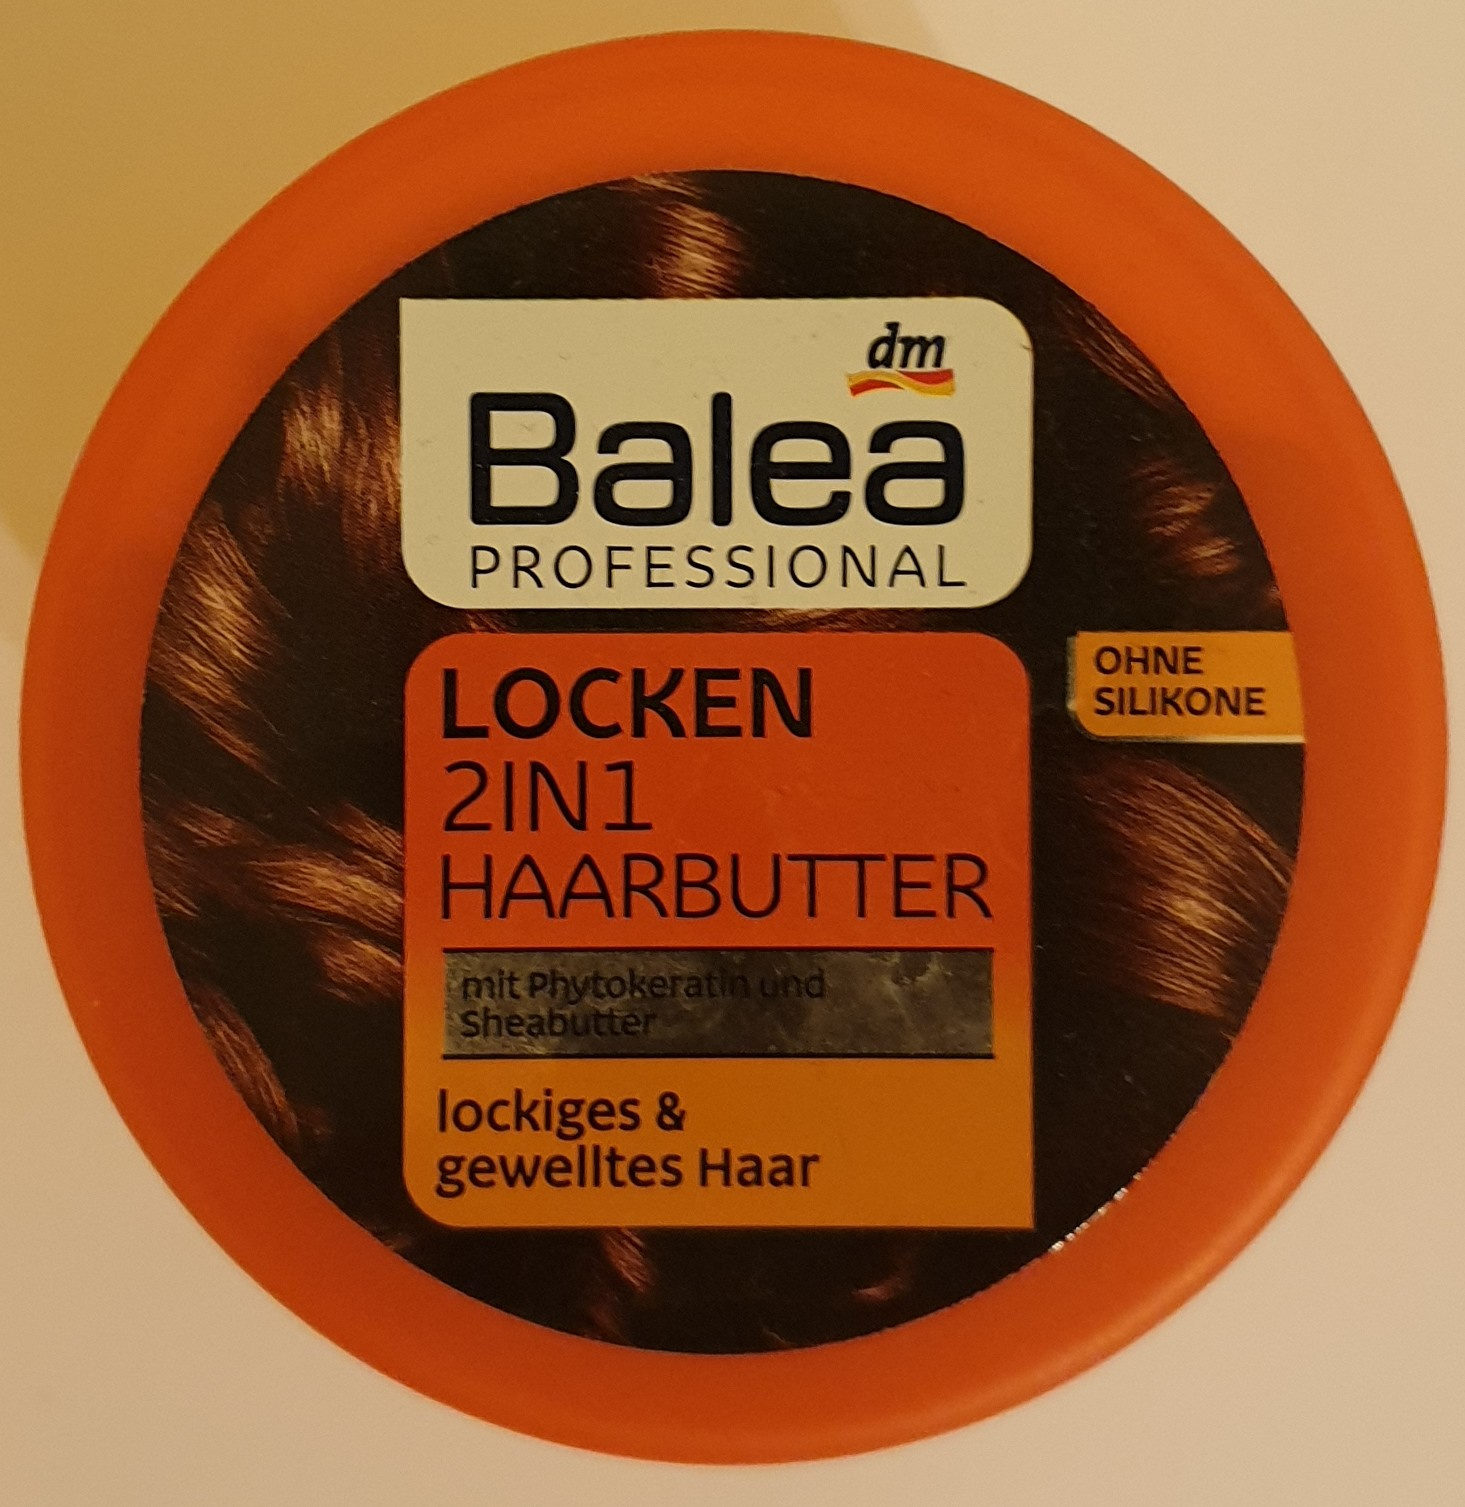 Locken 2in1 Haarbutter - מוצר - de